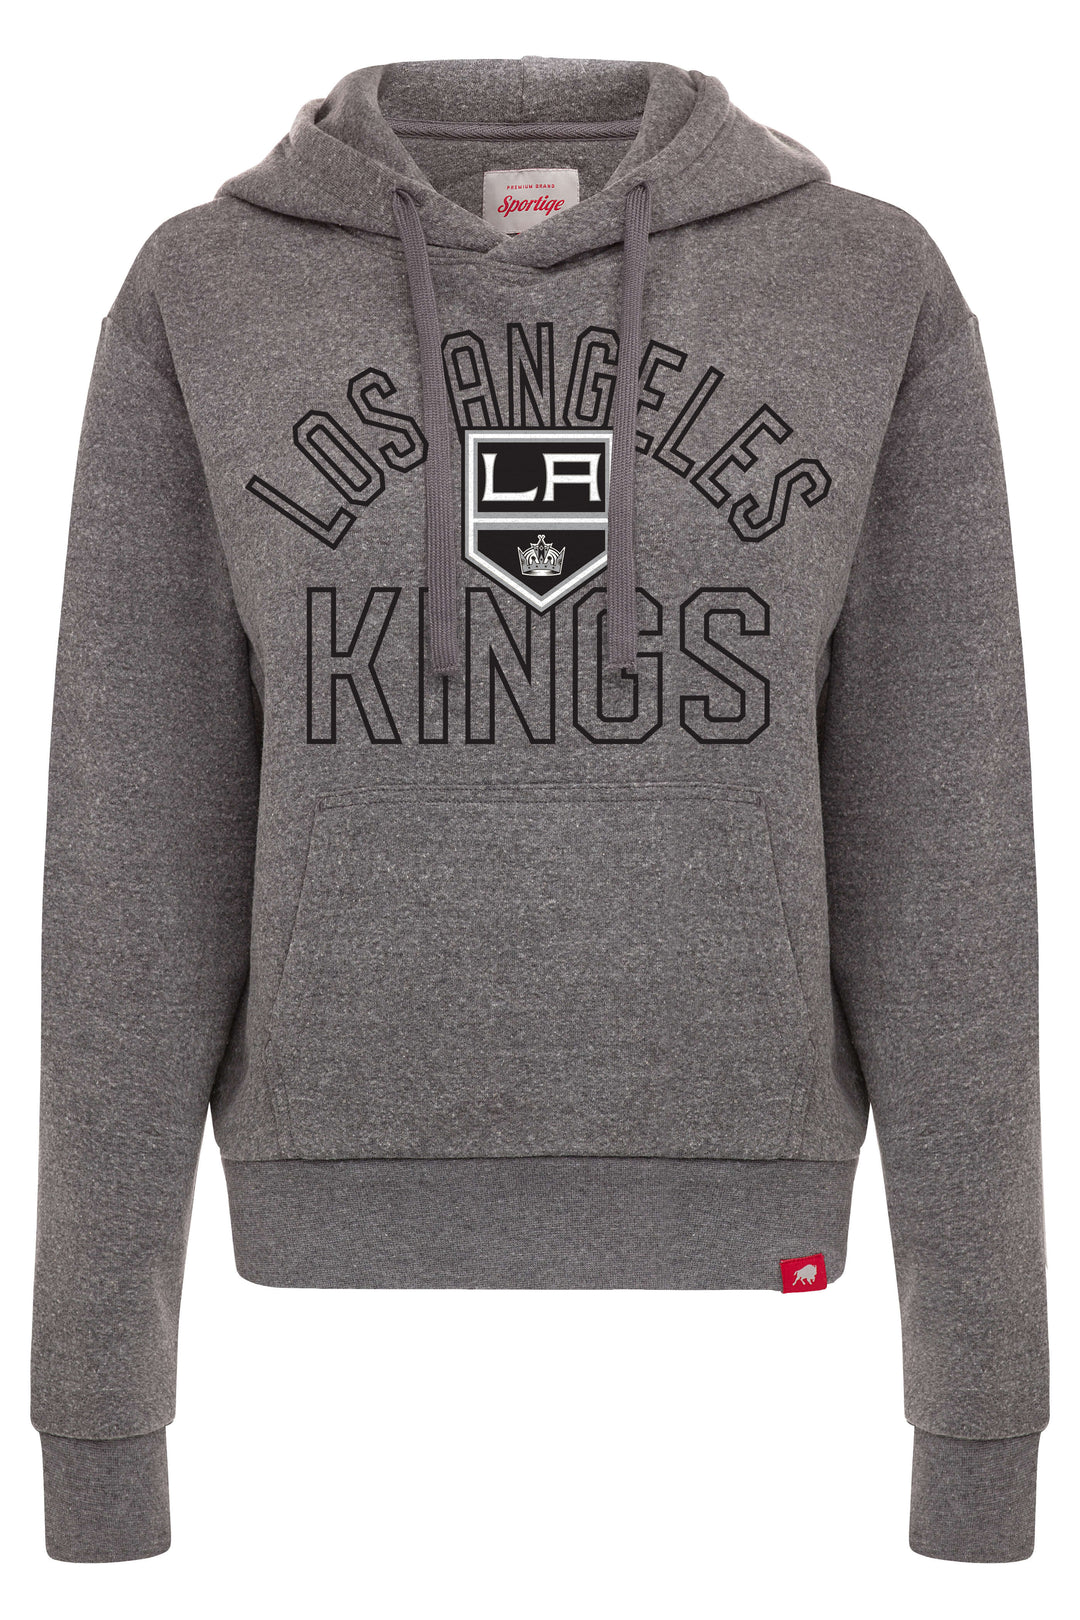 Los Angeles Kings Hoodies, Kings Sweatshirts, Fleeces, Los Angeles